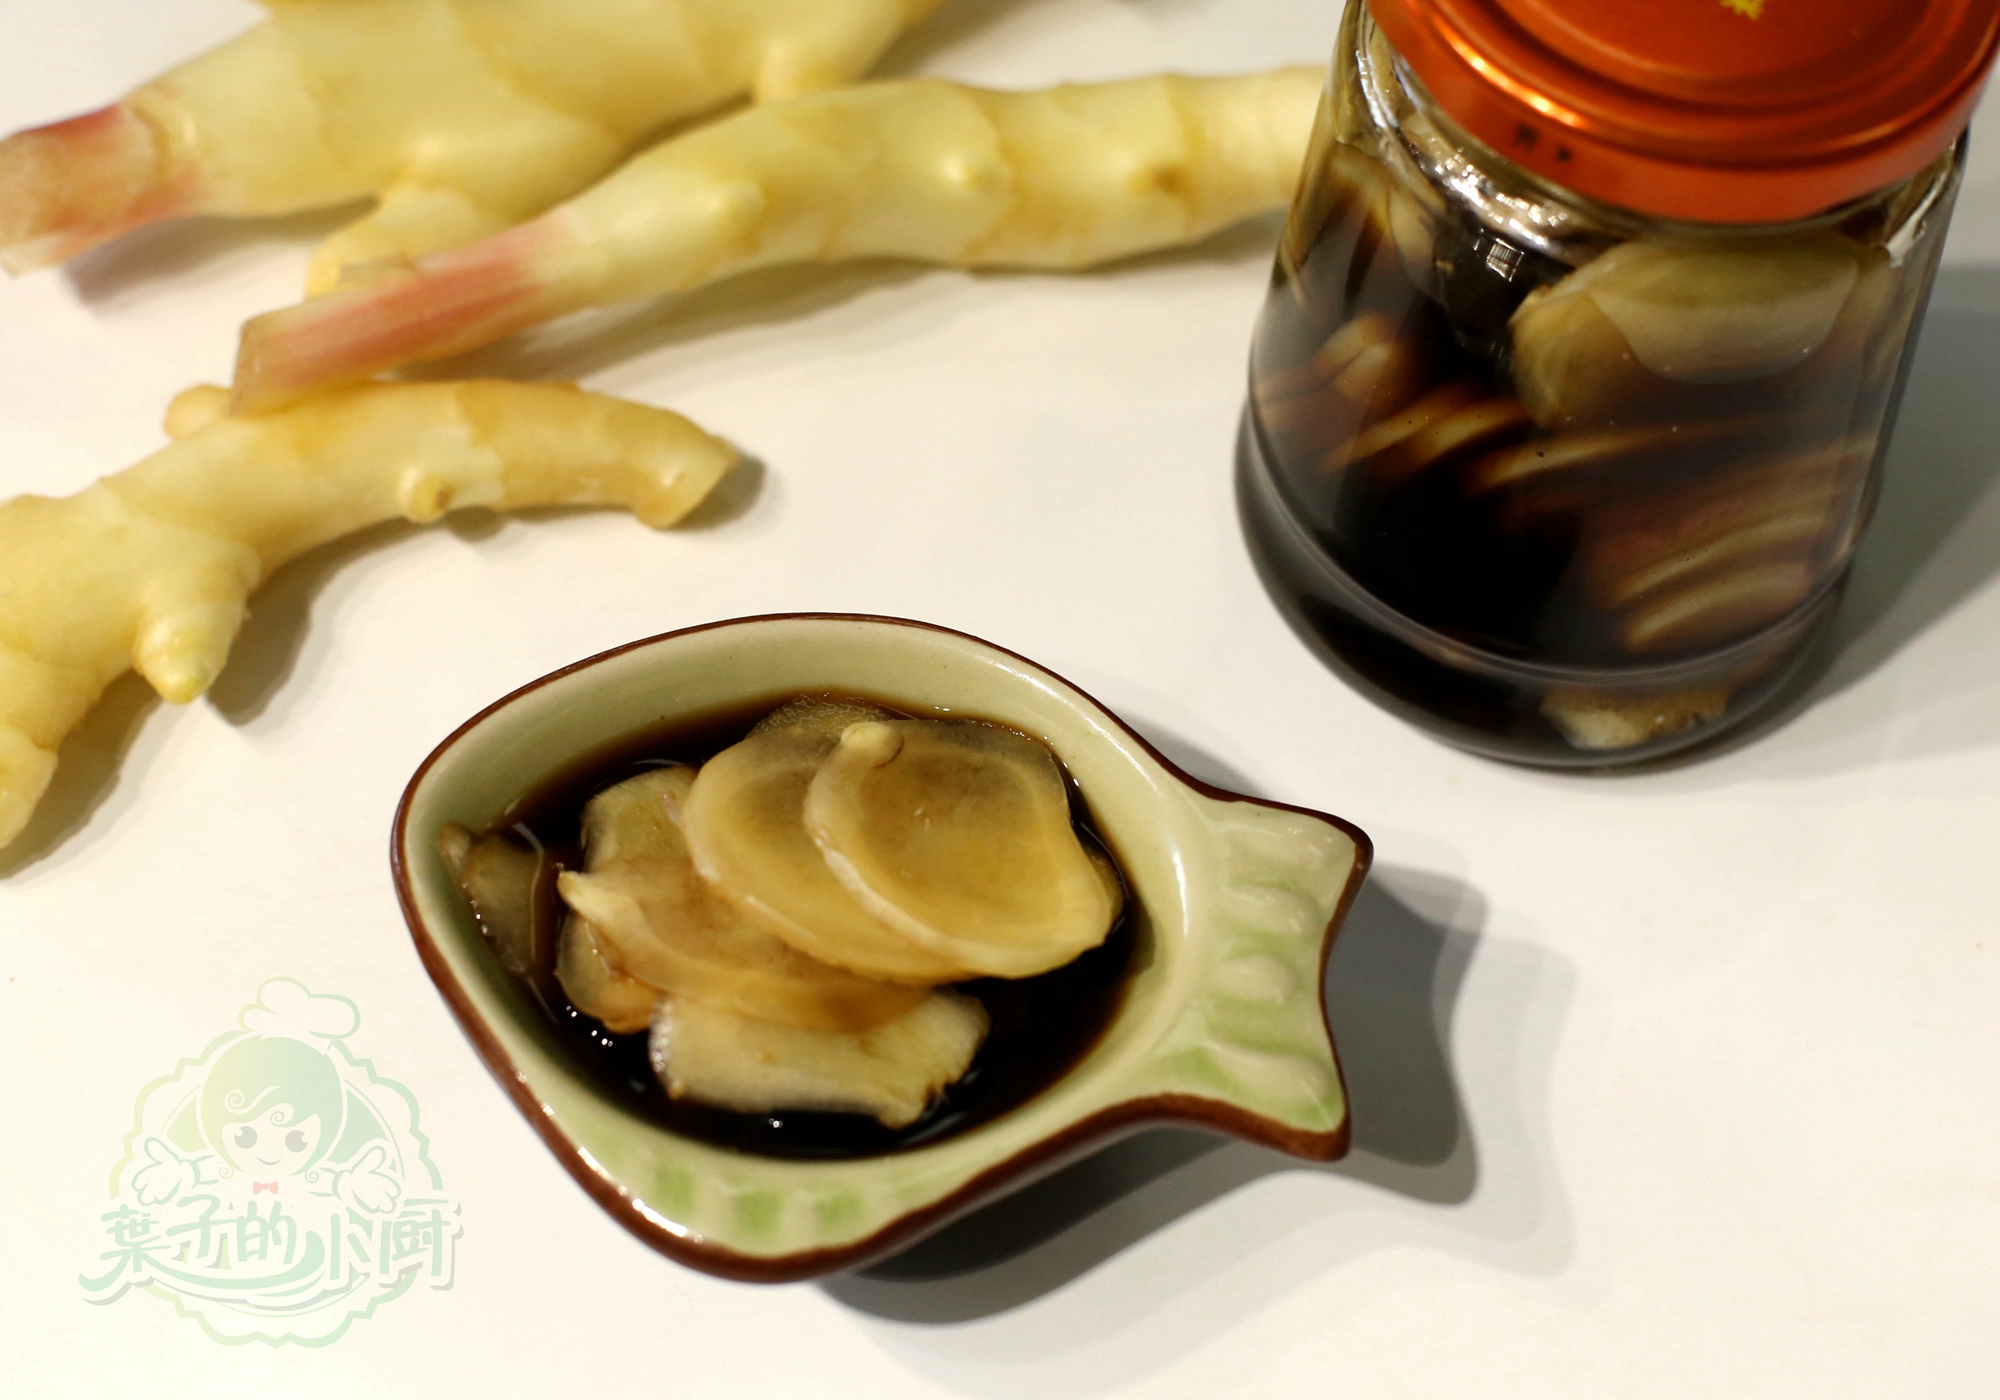 姜醋不只是广东人才能吃，原来它的营养可丰富了